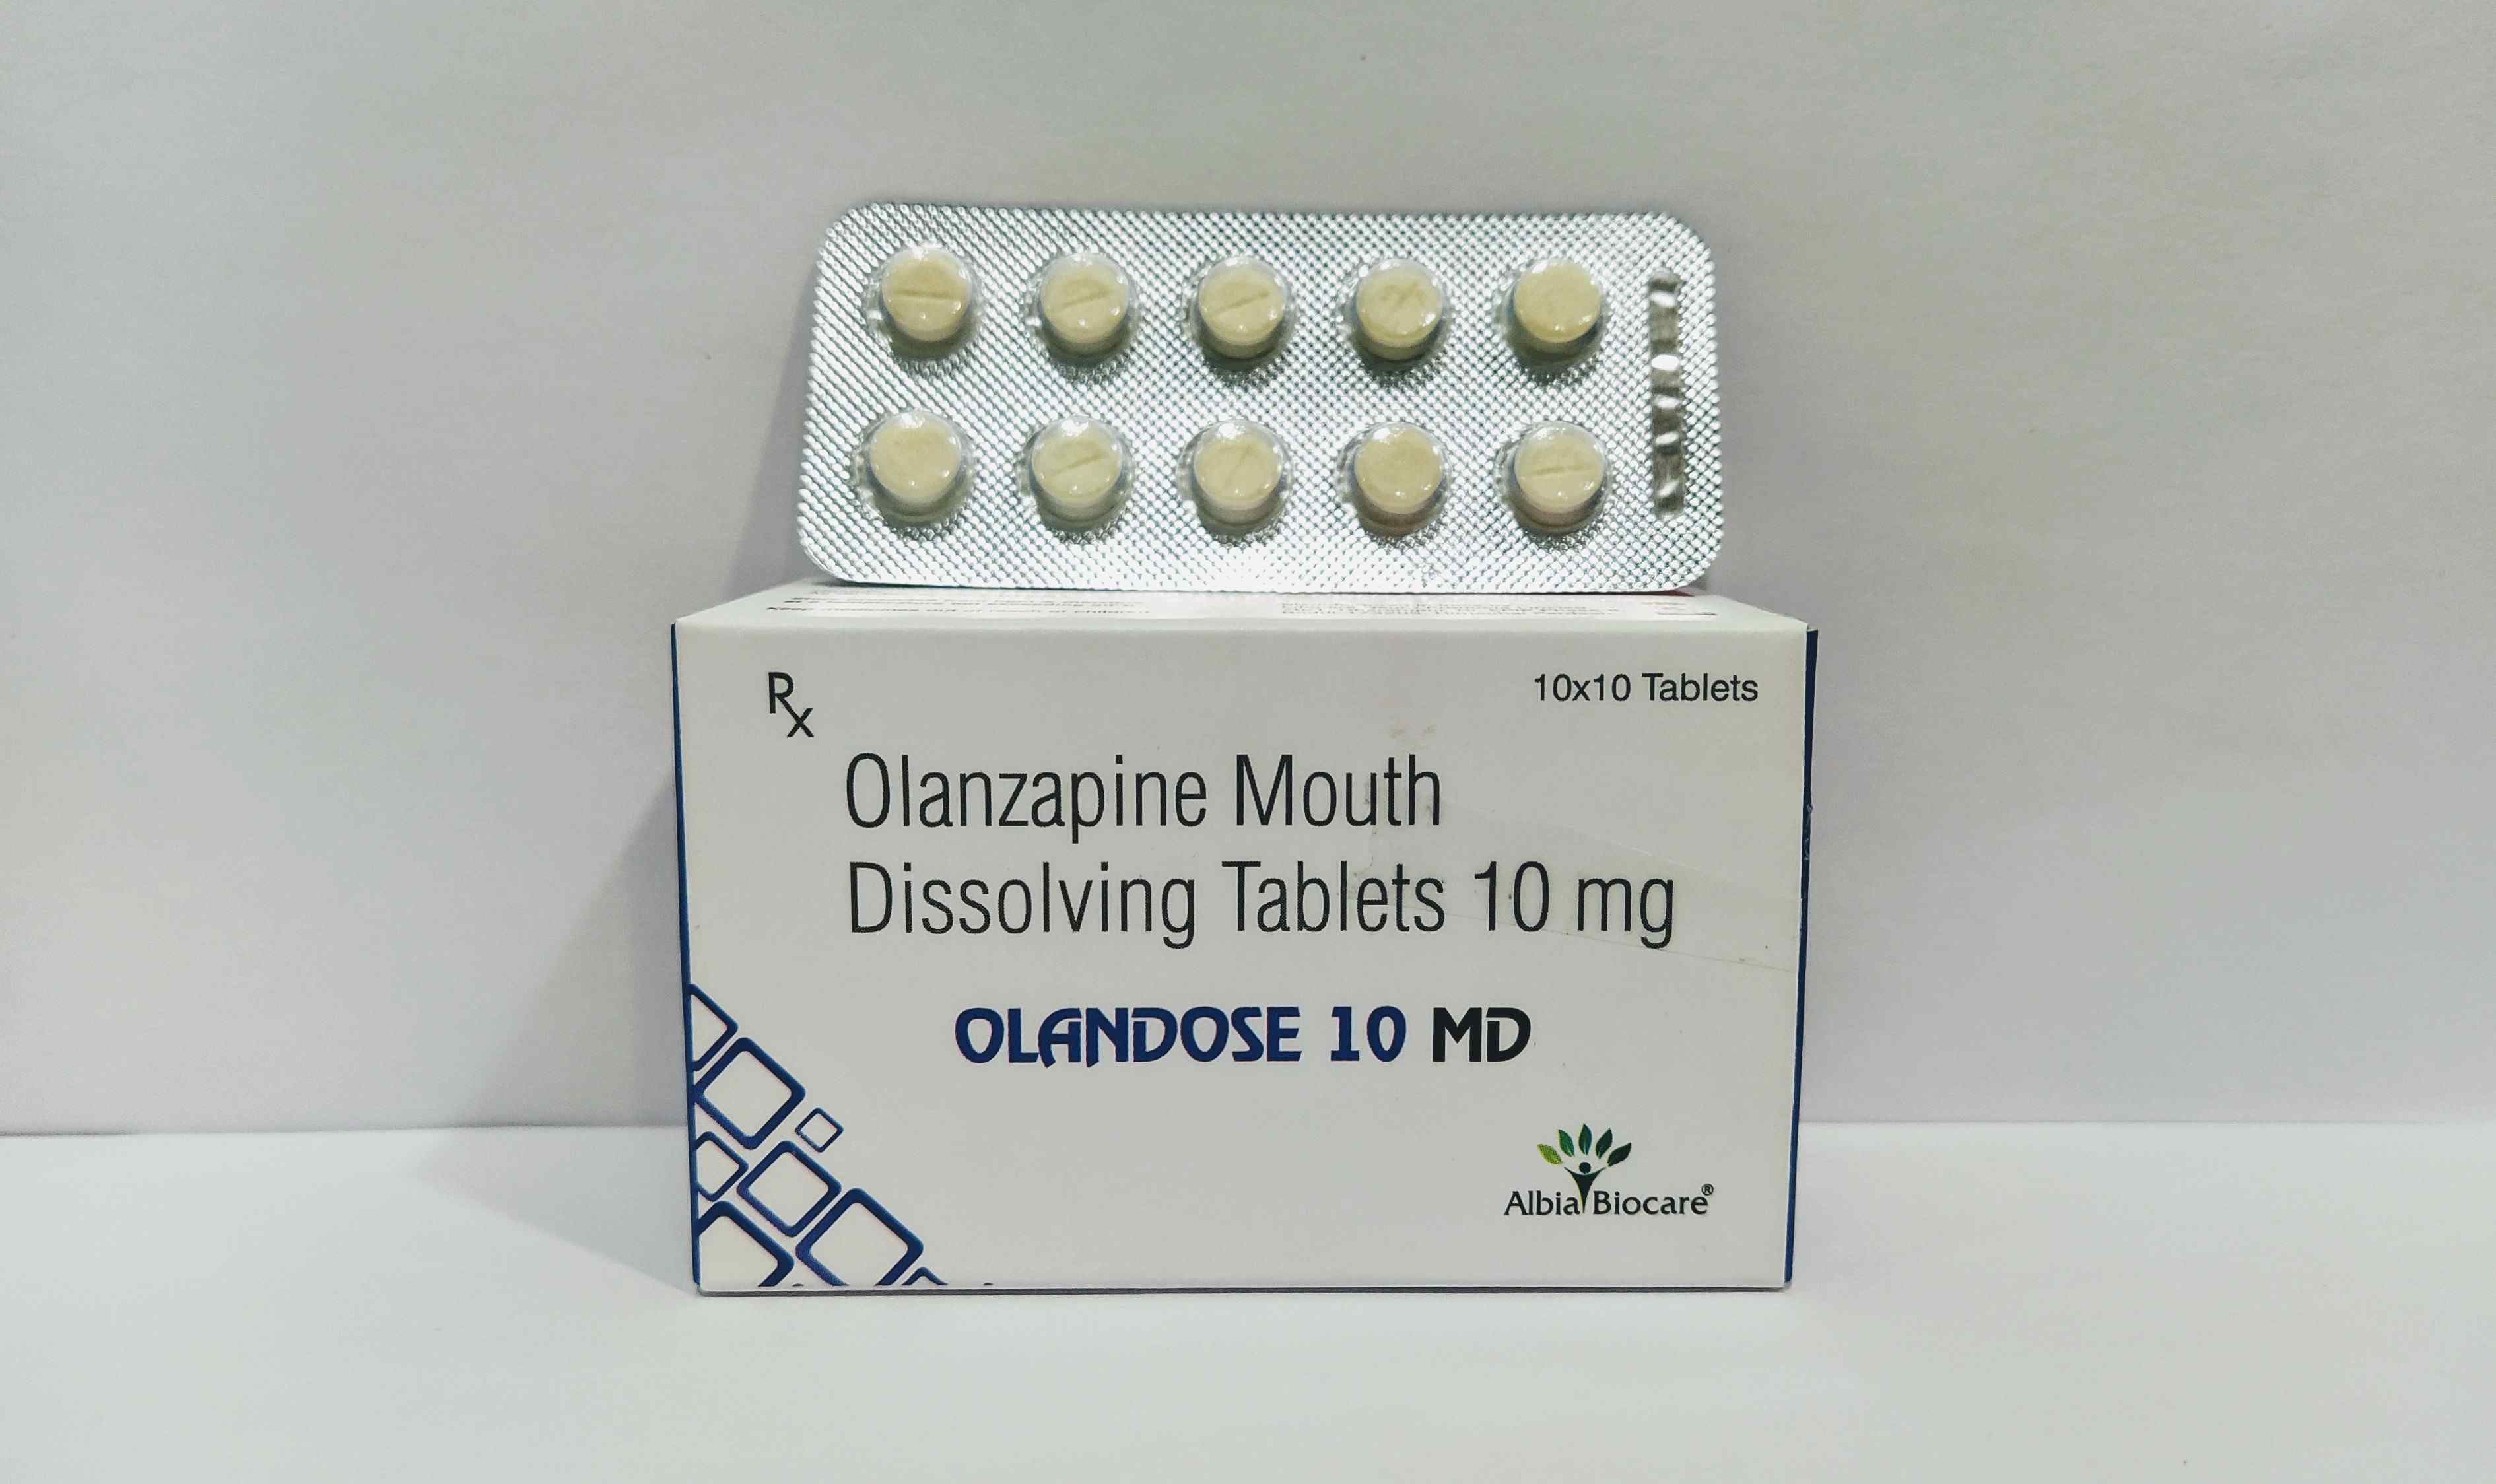 Olandose-10 MD Tab. | Olanzapine Mouth Dissloving Tab. 10mg